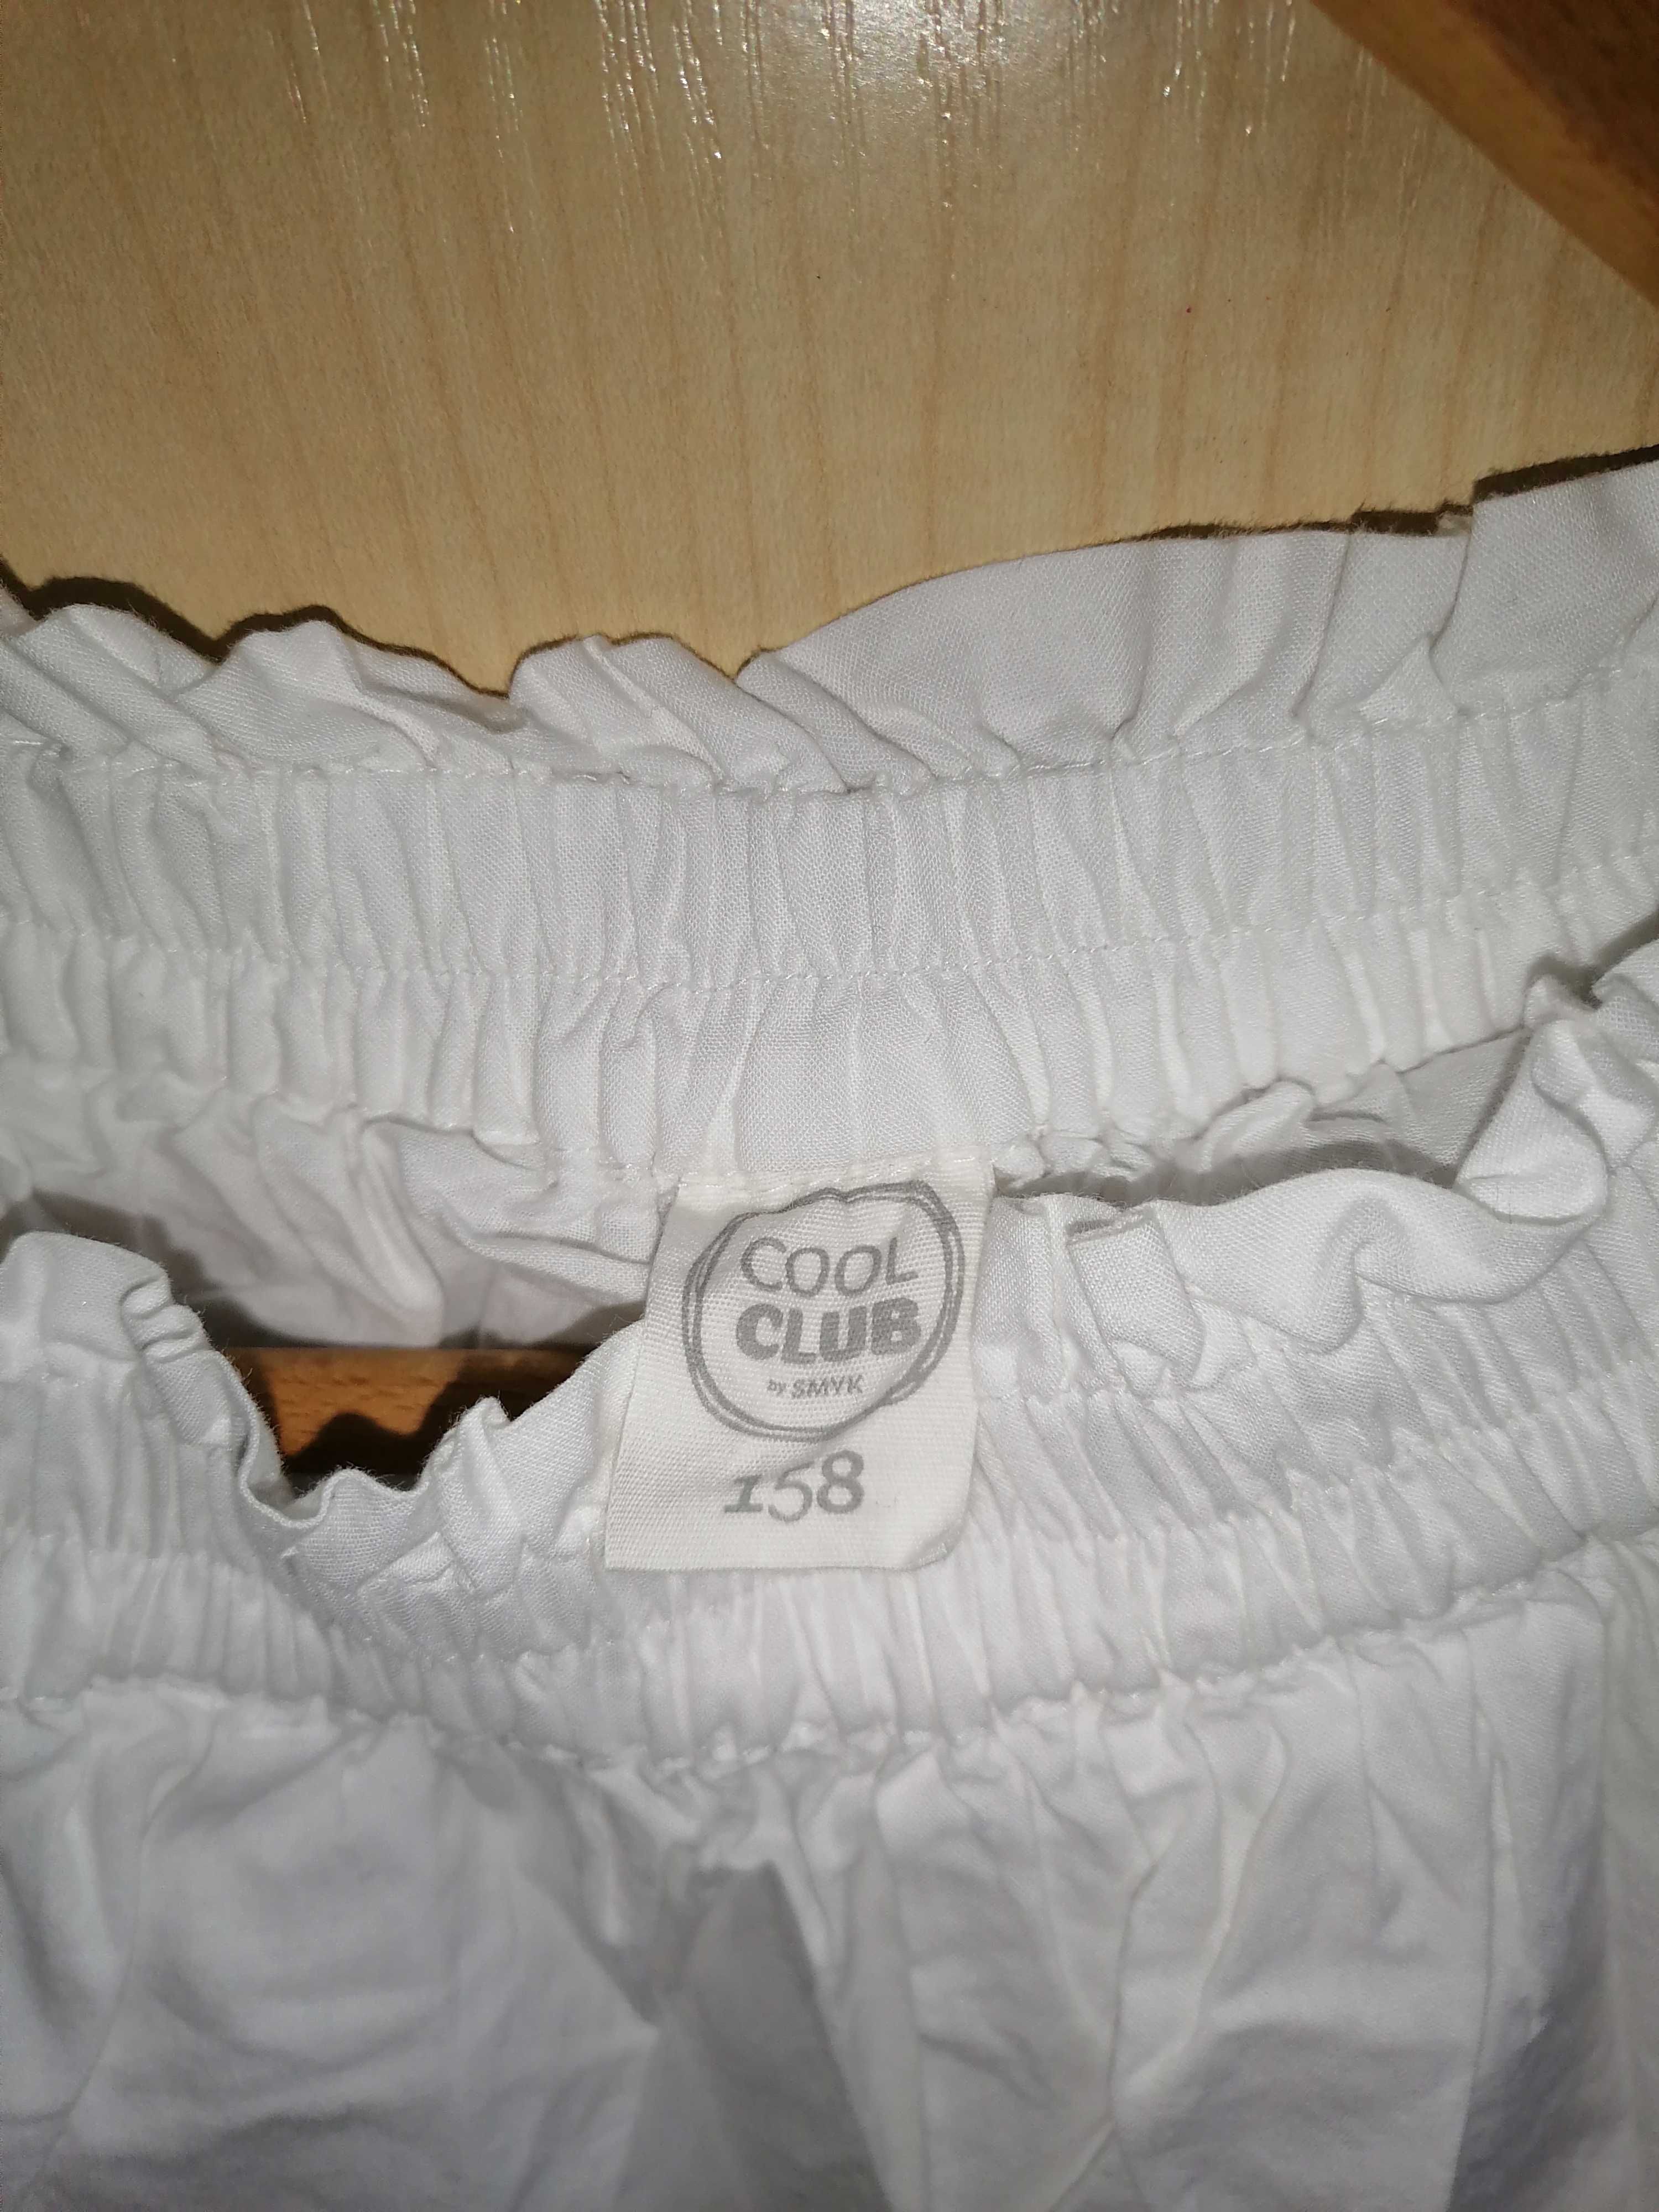 Spódnica dla dziewczynki Coolclub 158 nowa